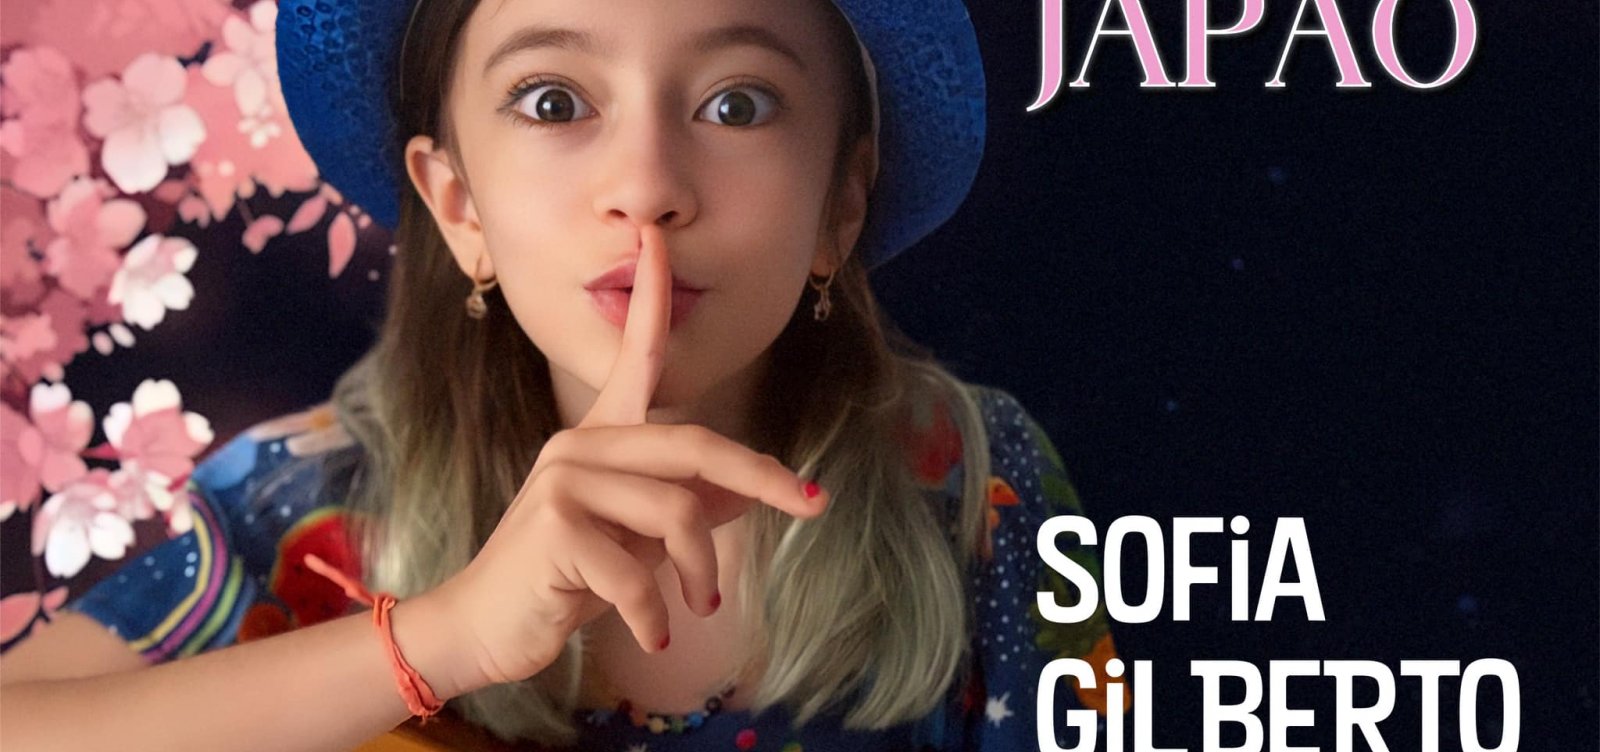 Neta de João Gilberto, Sofia lança primeiro single e prepara álbum aos 8 anos